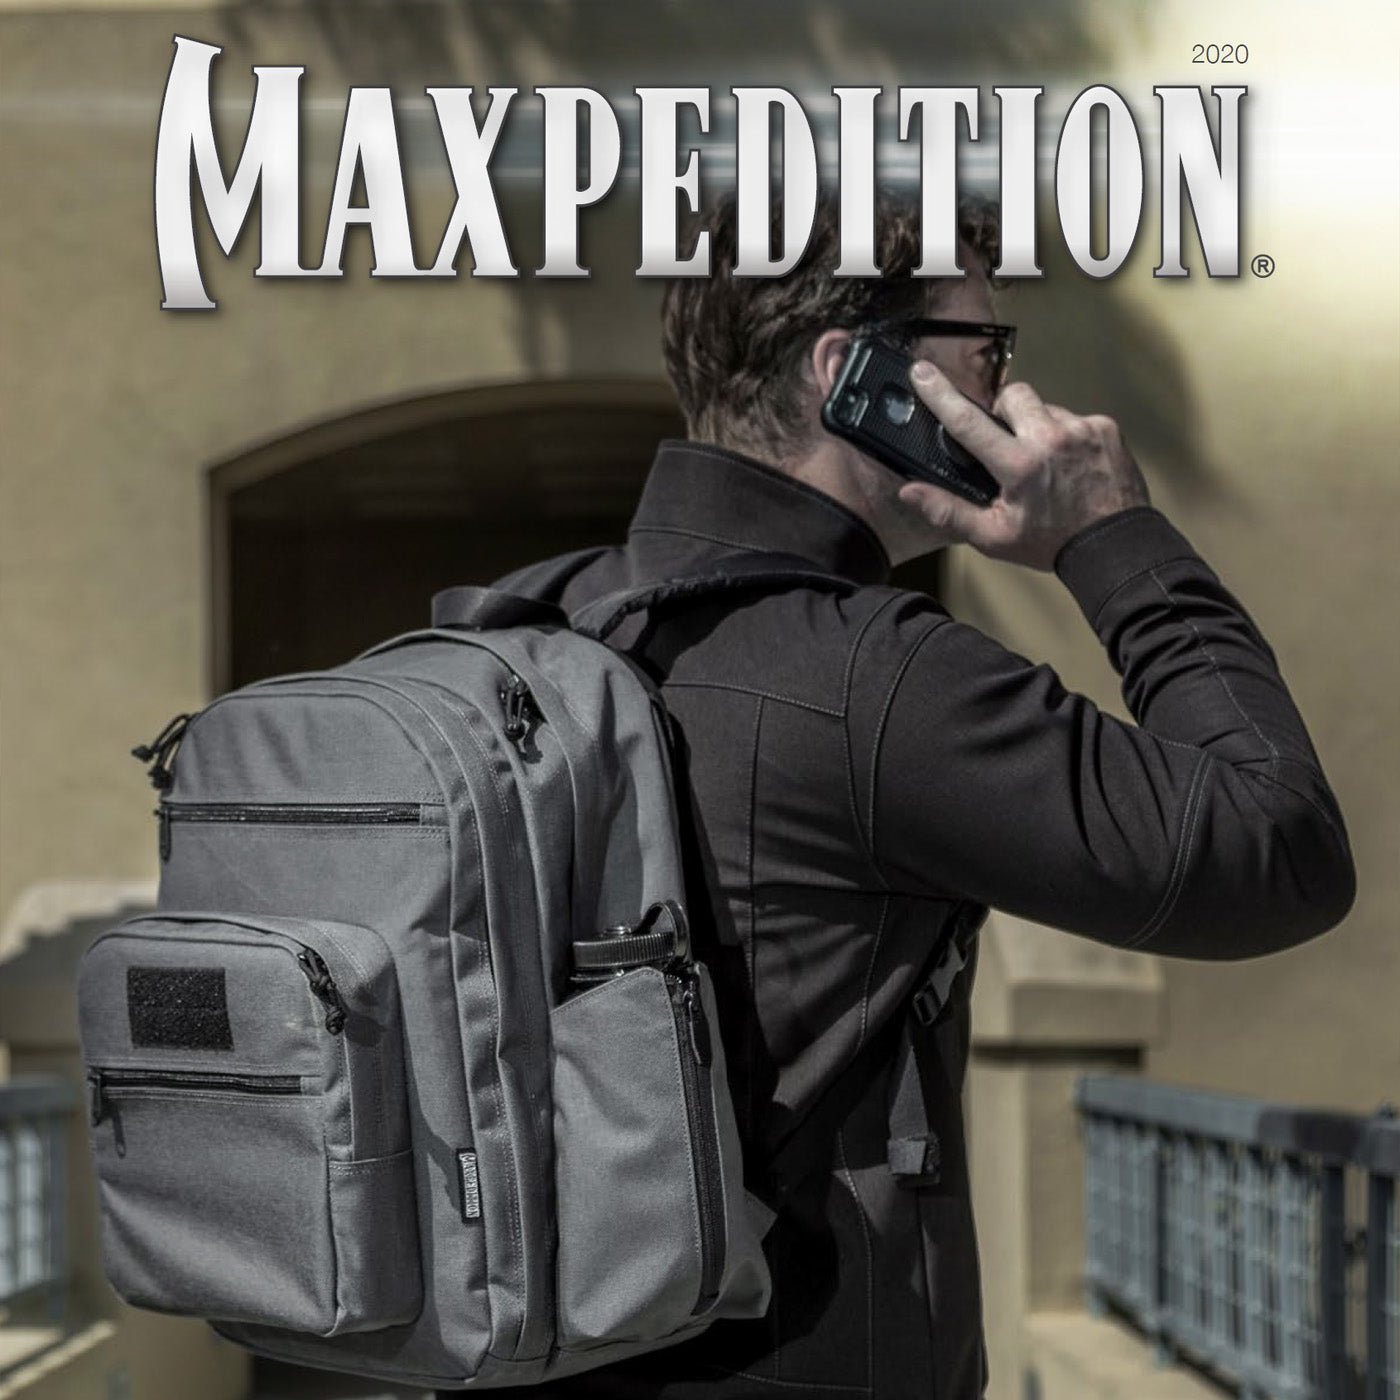 catalogo maxpedition 2020